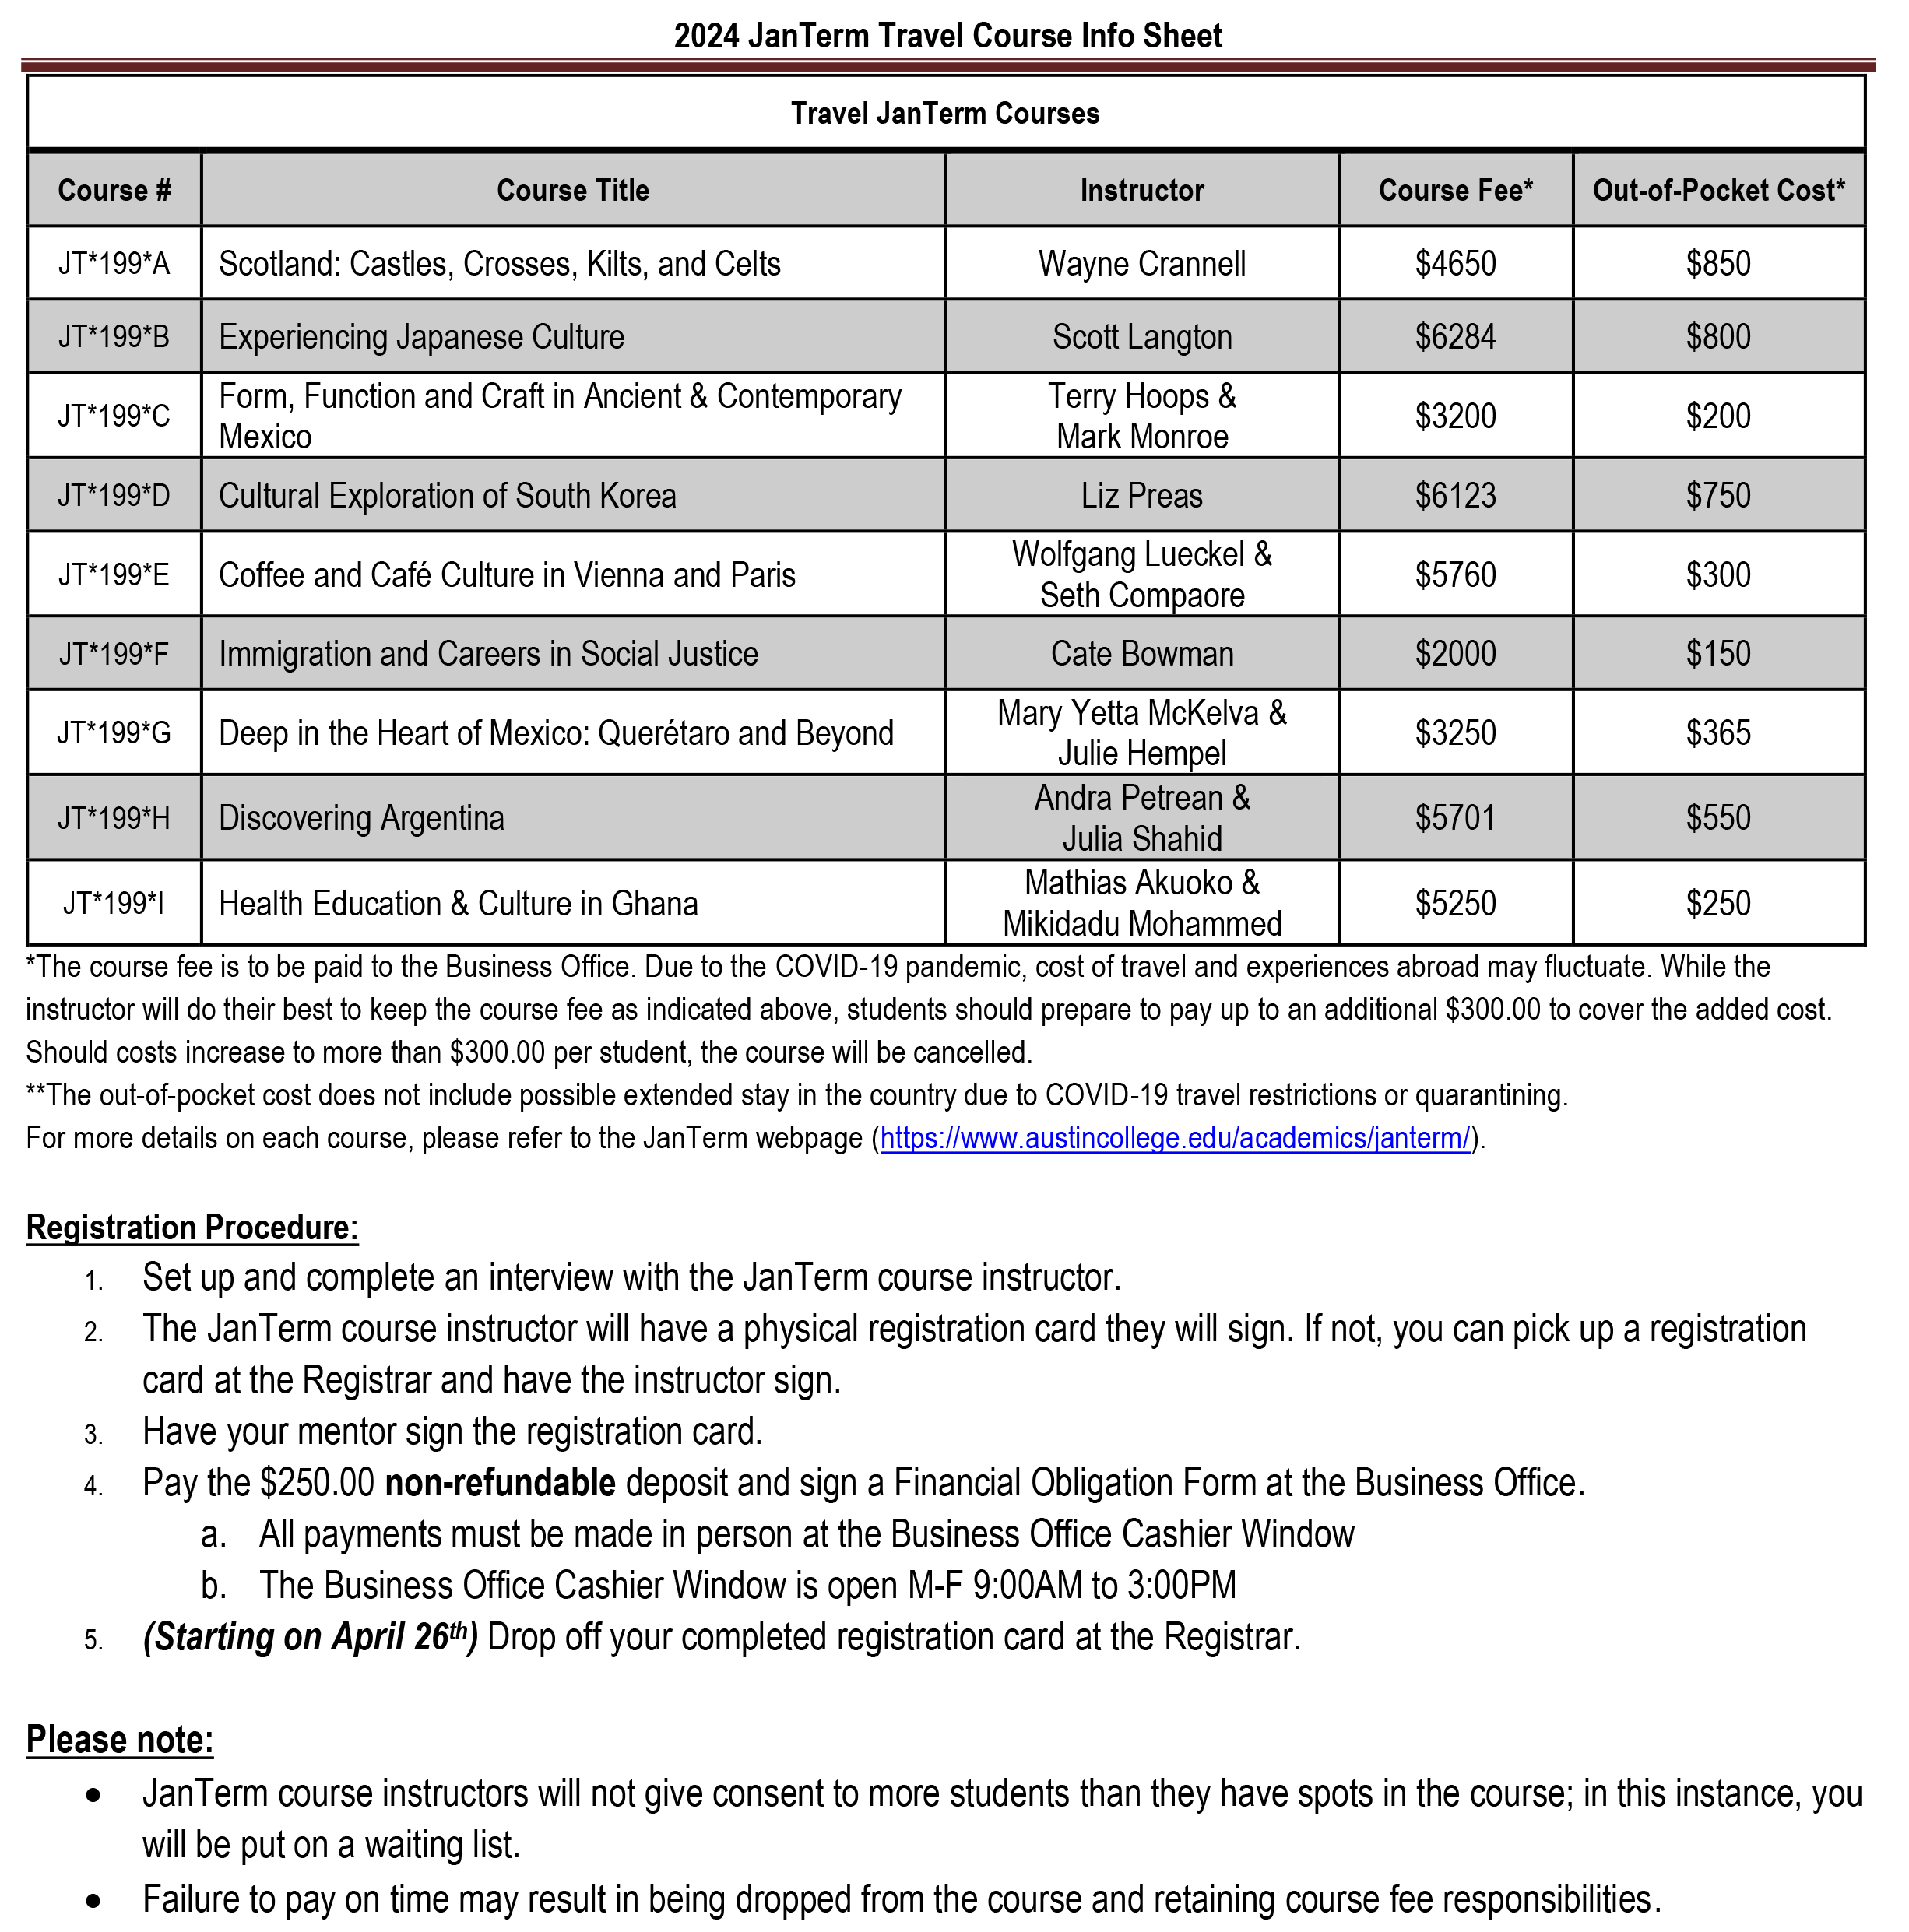 Travel JanTerm 2024 Info Sheet